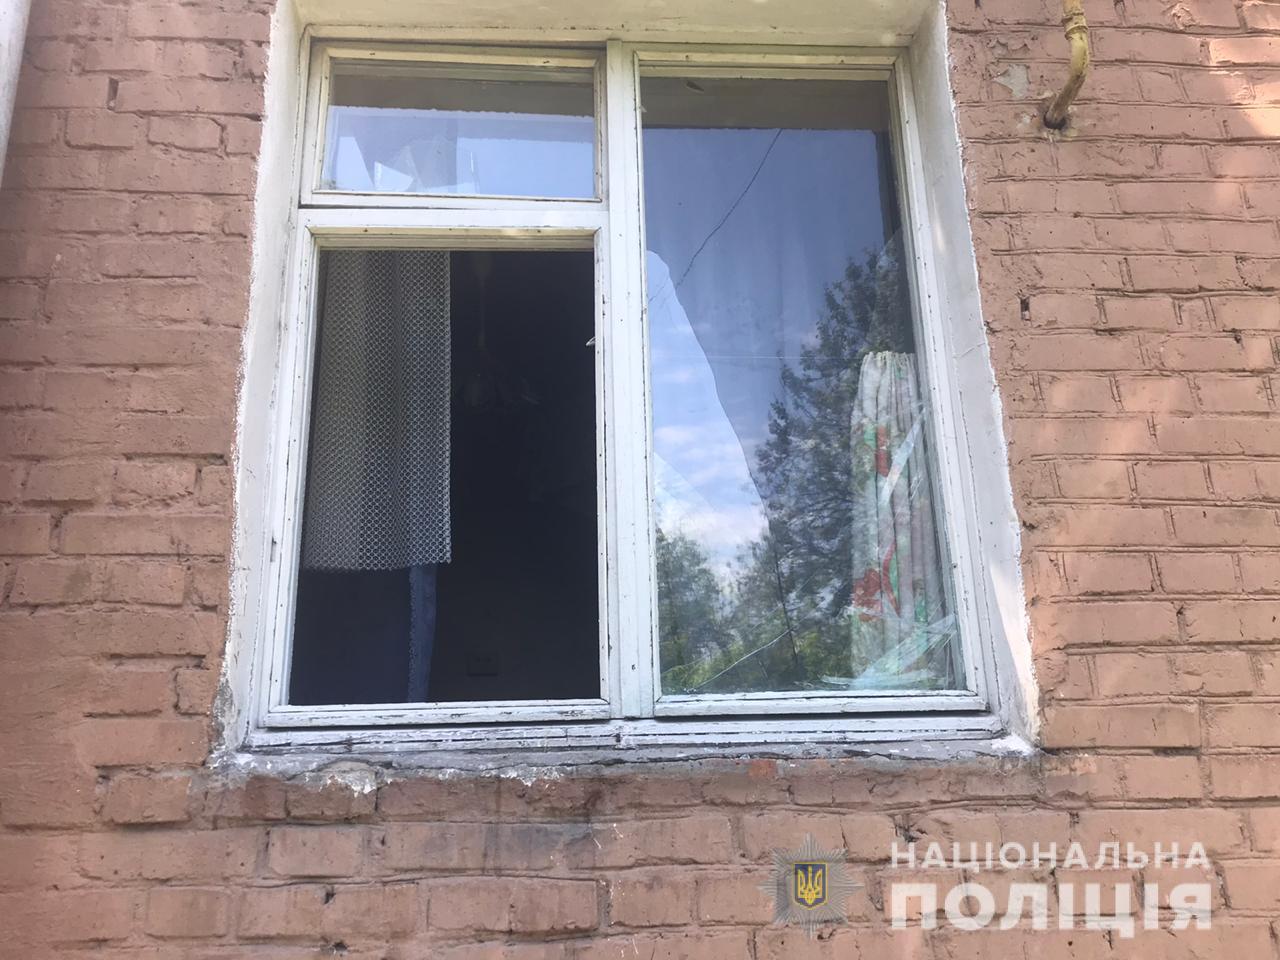 Заважав дивитися фільм: на Київщині вітчим викинув дитину з вікна